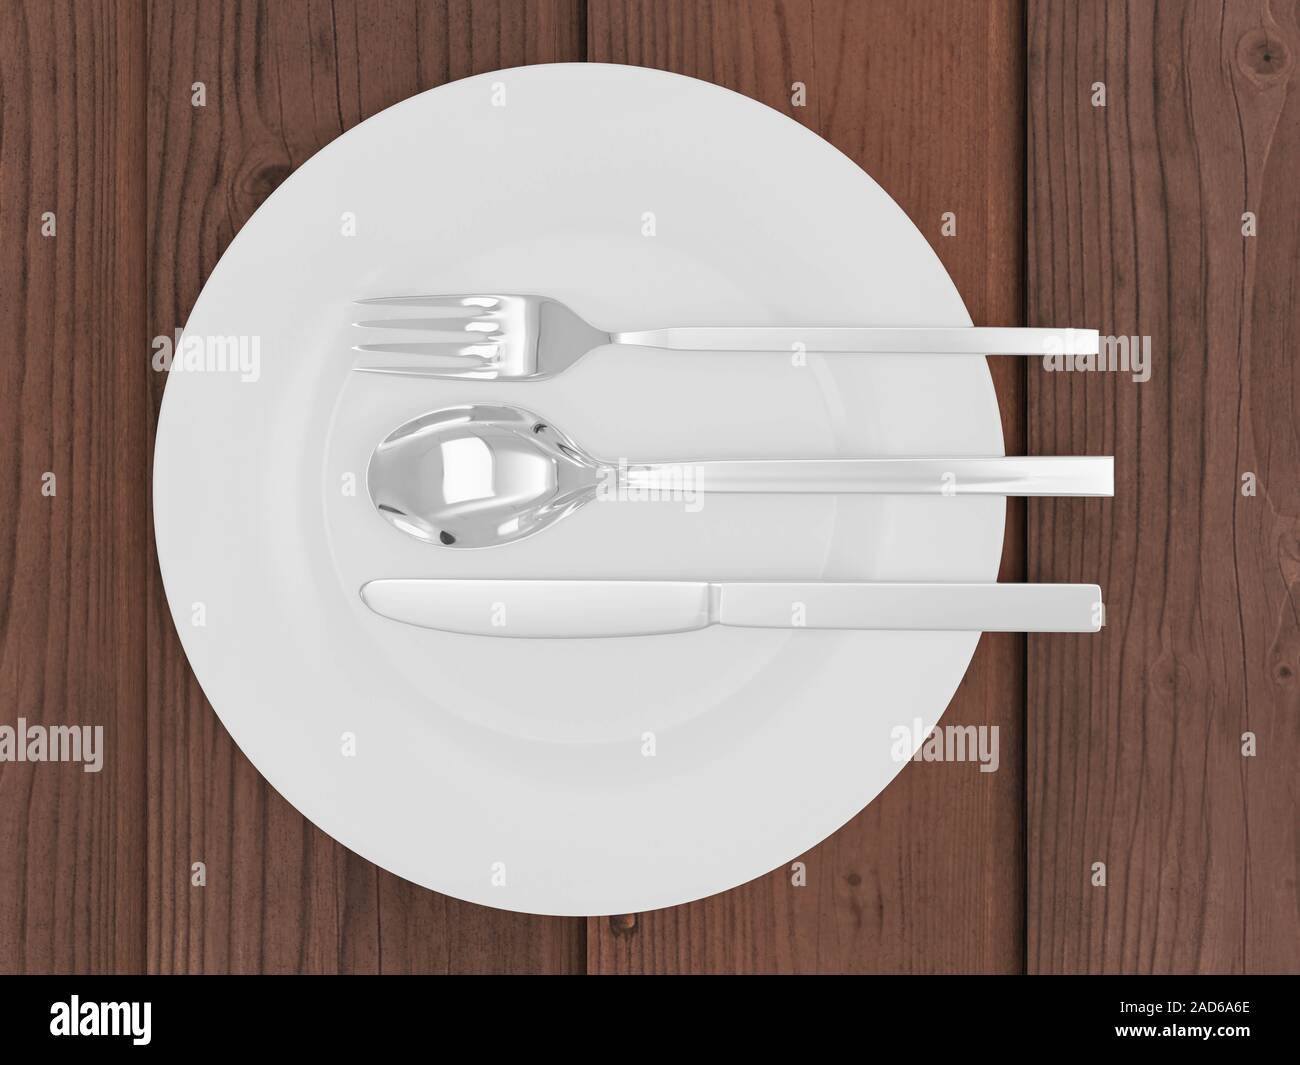 Gabel, Löffel, Messer und Platte isoliert auf hölzernen Tisch 3D-Render Abbildung Stockfoto